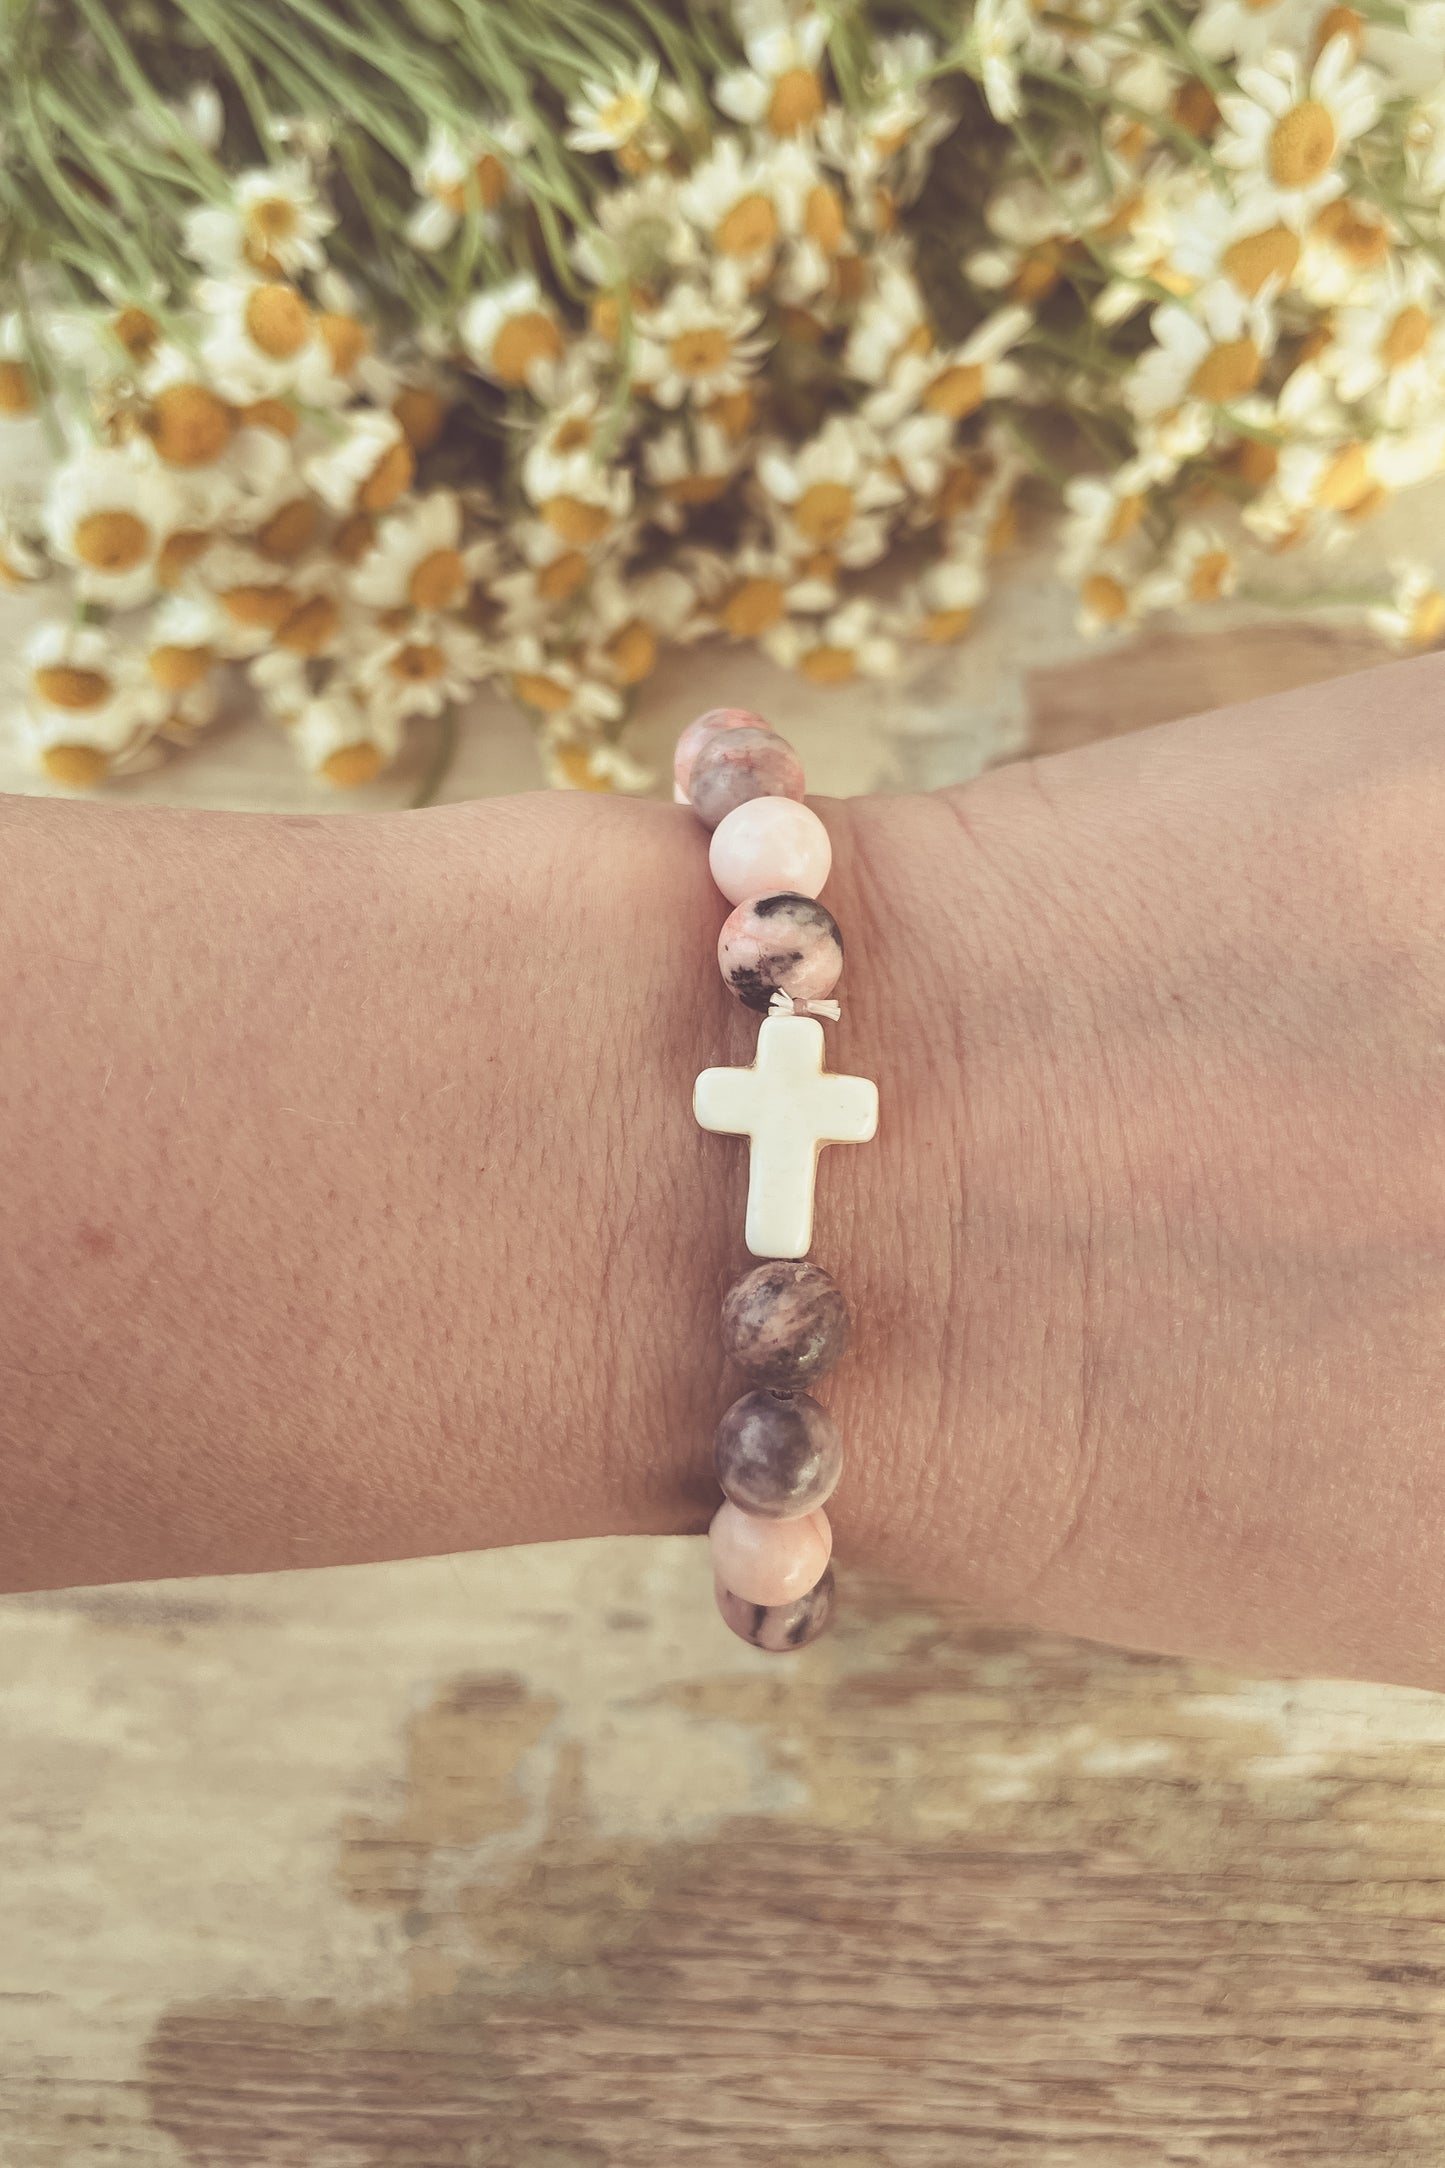 Beautiful Faith Stone Stacking Bracelets